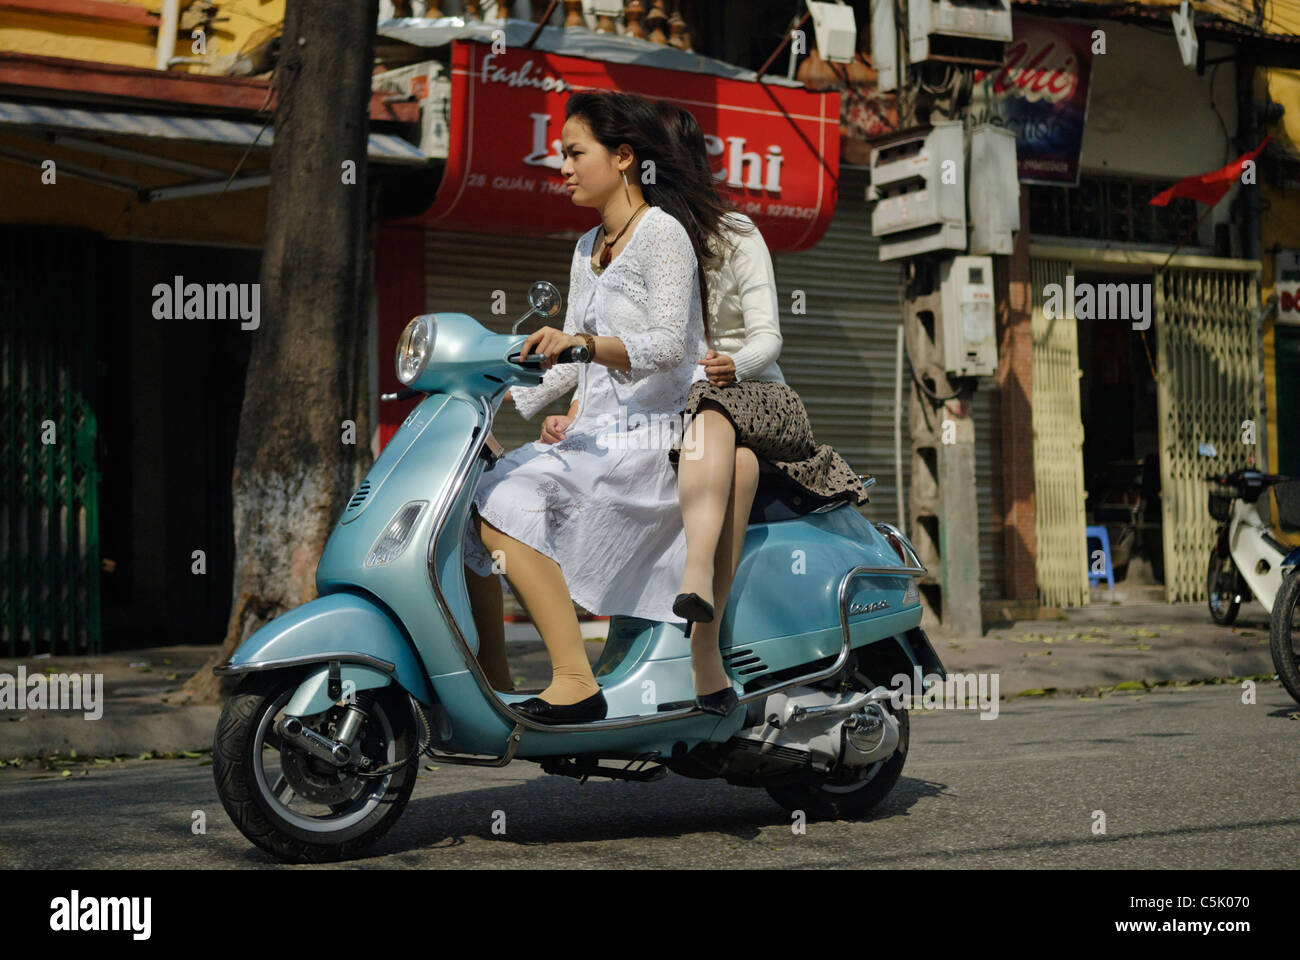 Asia, Vietnam, Hanoi. Hanoi old quarter. Two young dressy vietnamese women riding a Vespa motorbike through Hanoi. Stock Photo